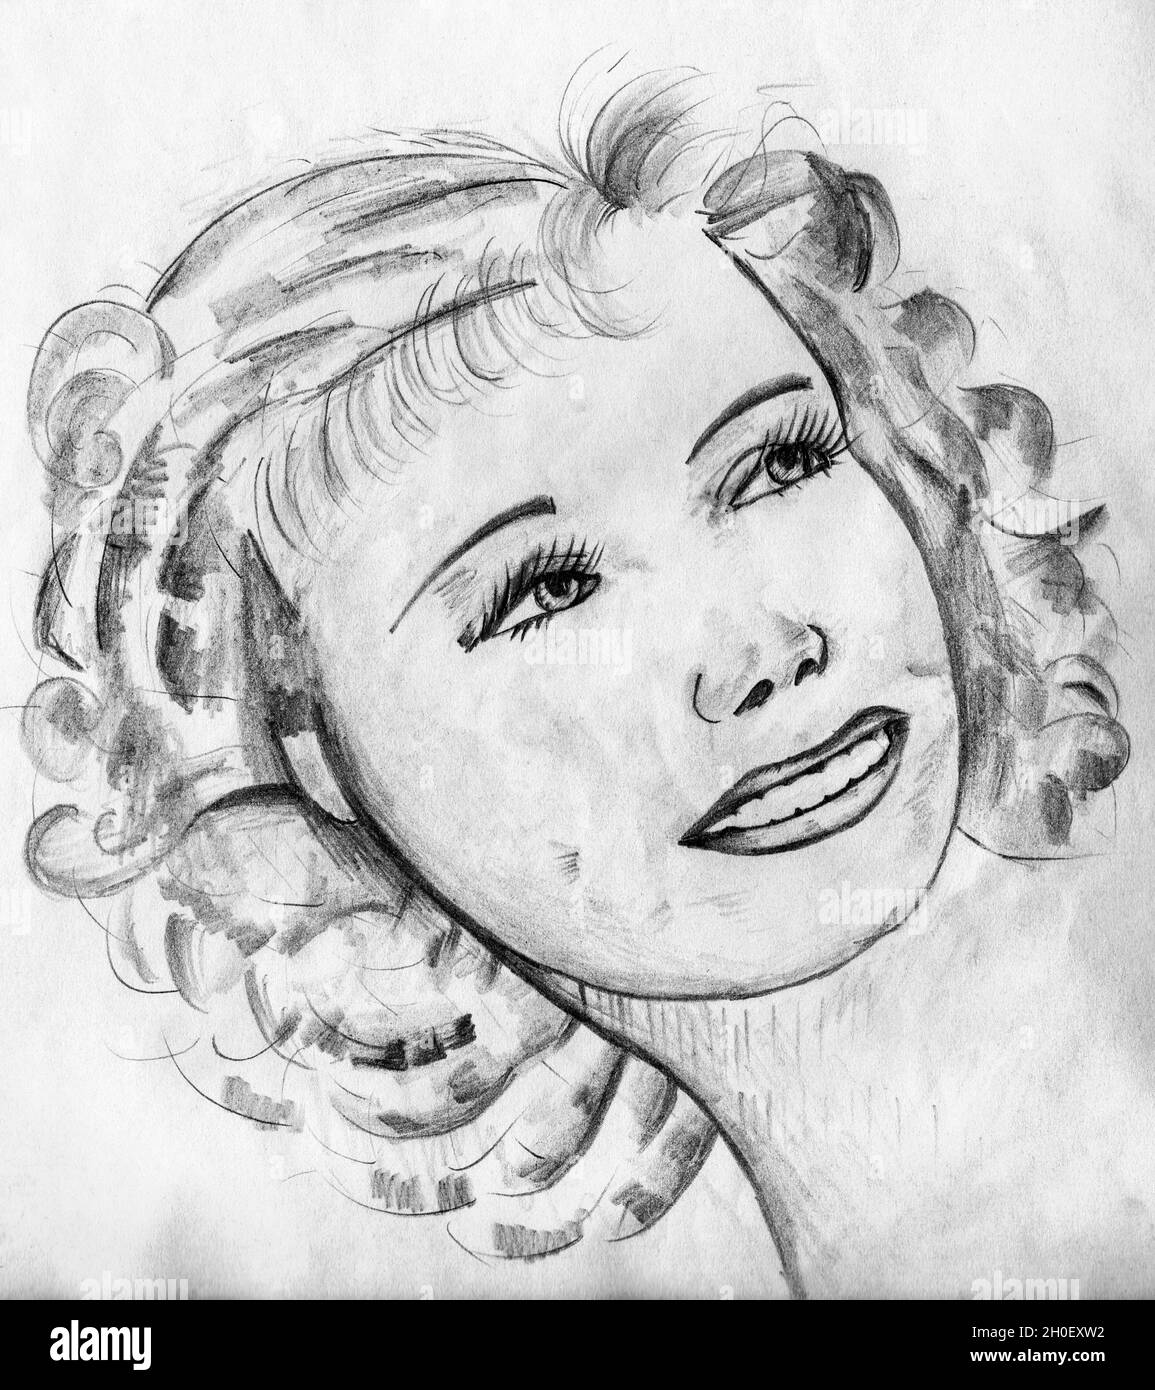 Représentation artistique d'une femme sophistiquée qui ressemble à une star de cinéma hollywoodienne des années 40.Dessin au crayon. Banque D'Images